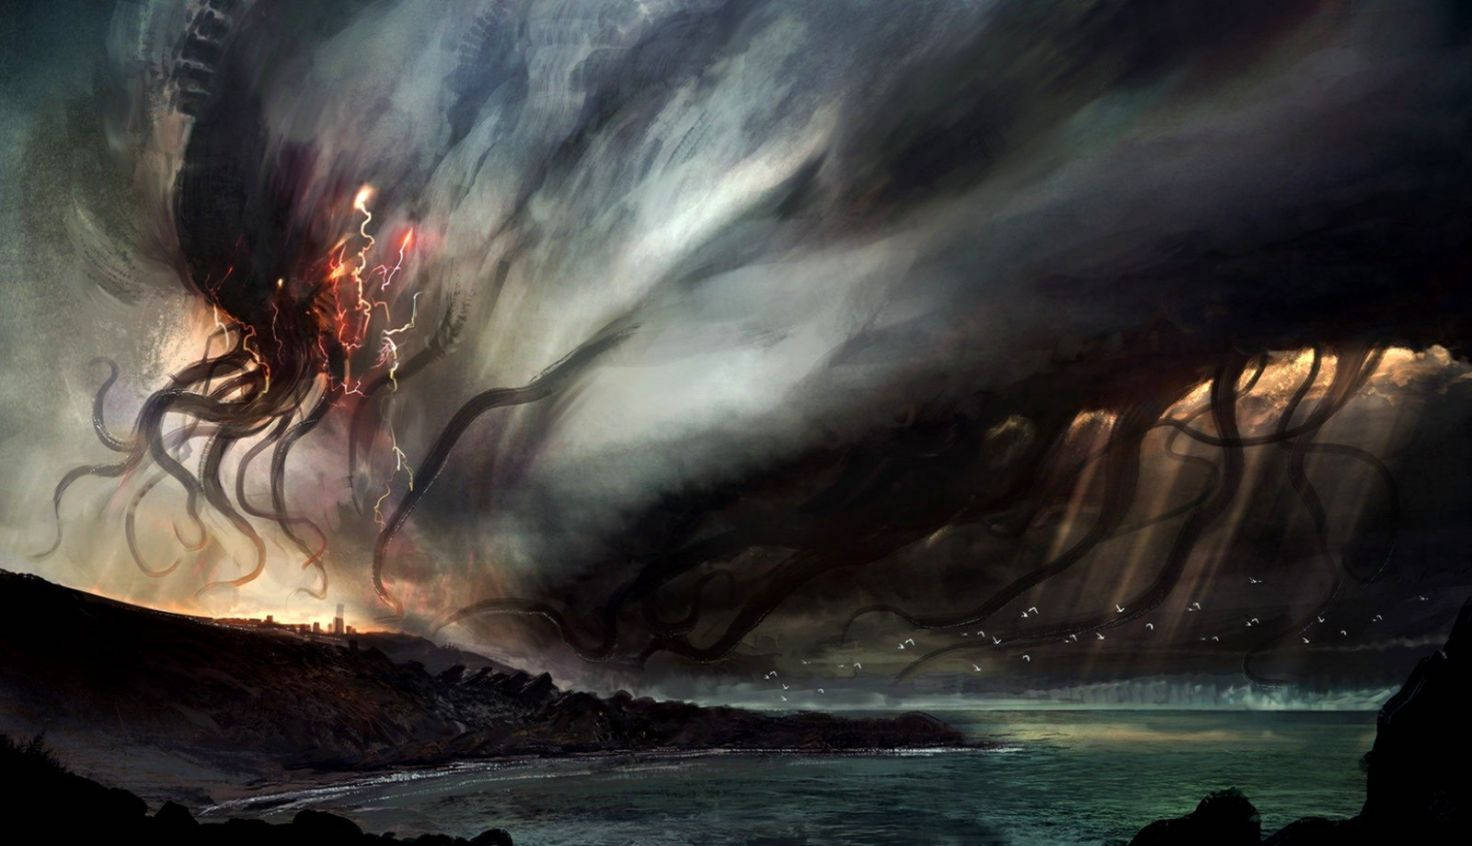 Cthulhu Ocean Storm Art Wallpaper